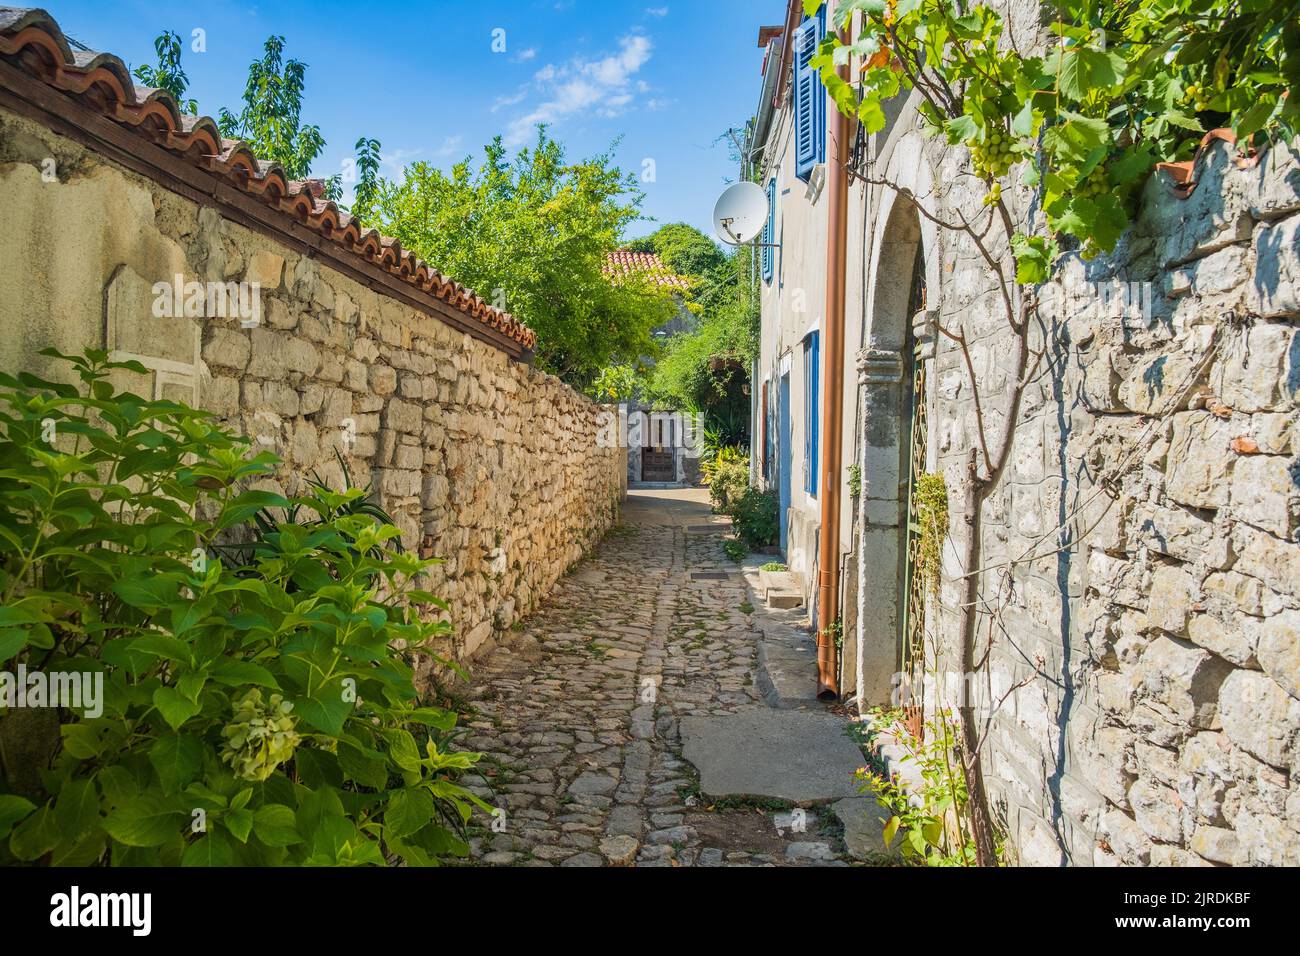 Rues romantiques de la vieille ville d'Osor sur l'île de Cres en Croatie Banque D'Images